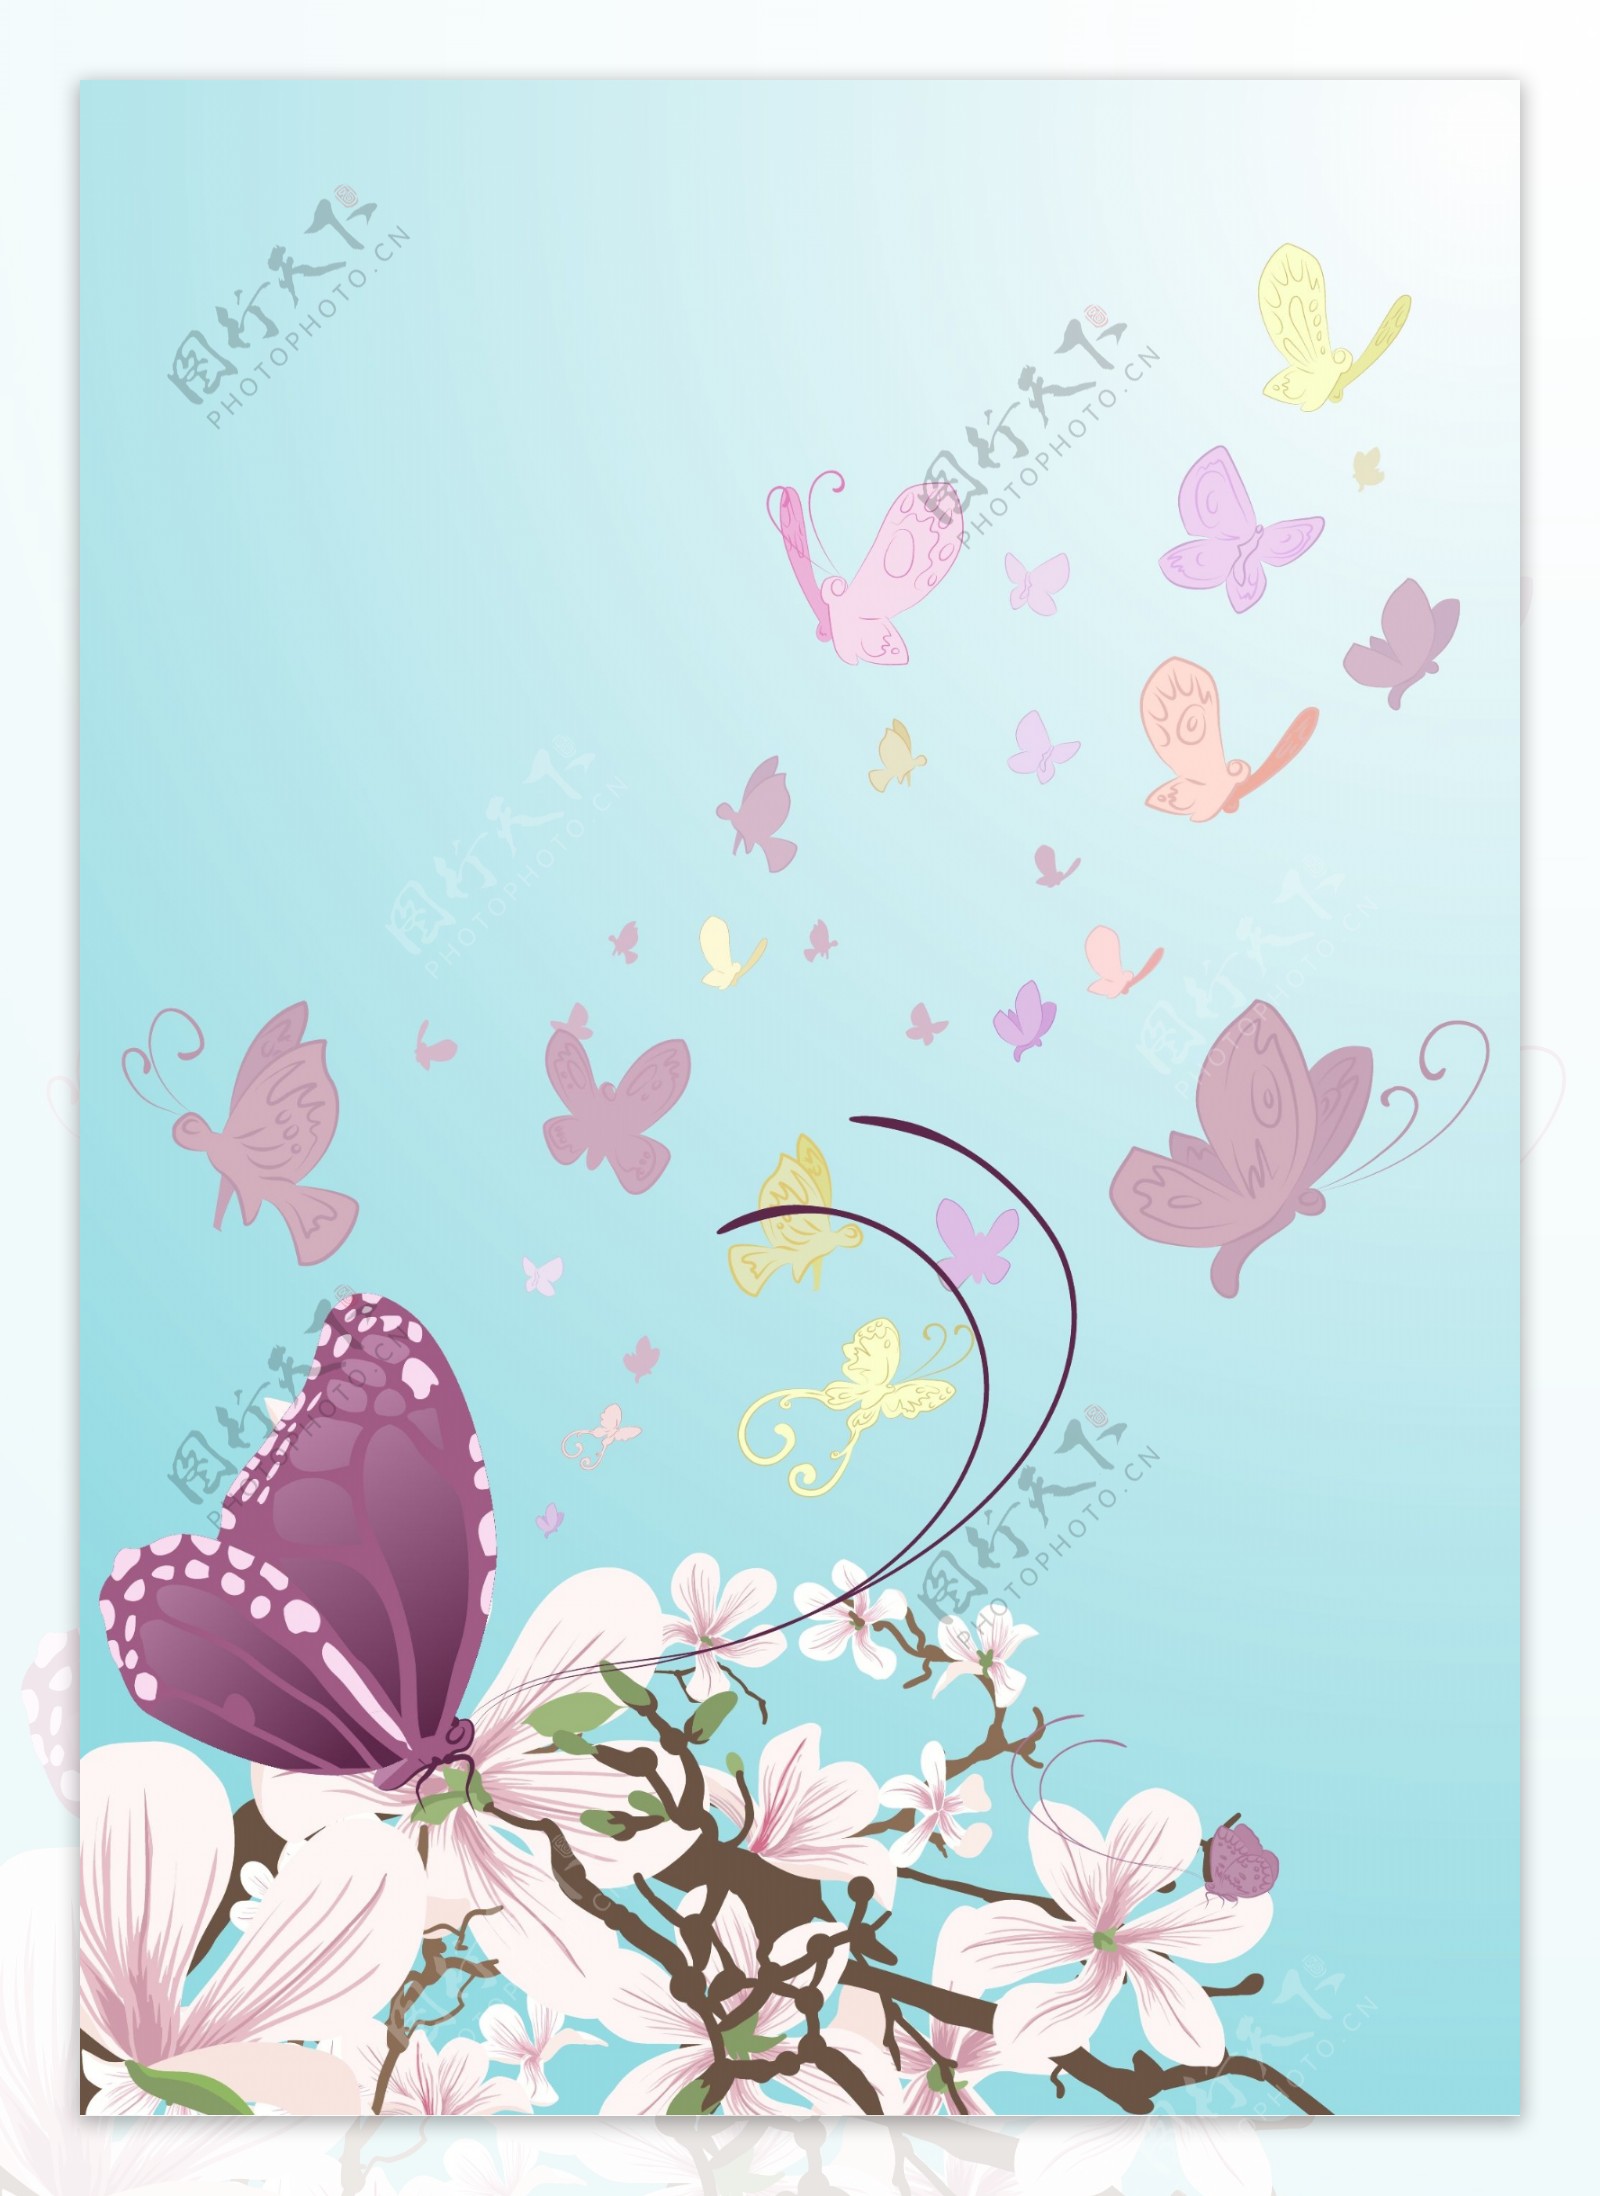 紫色蝴蝶与花朵矢量素材图片